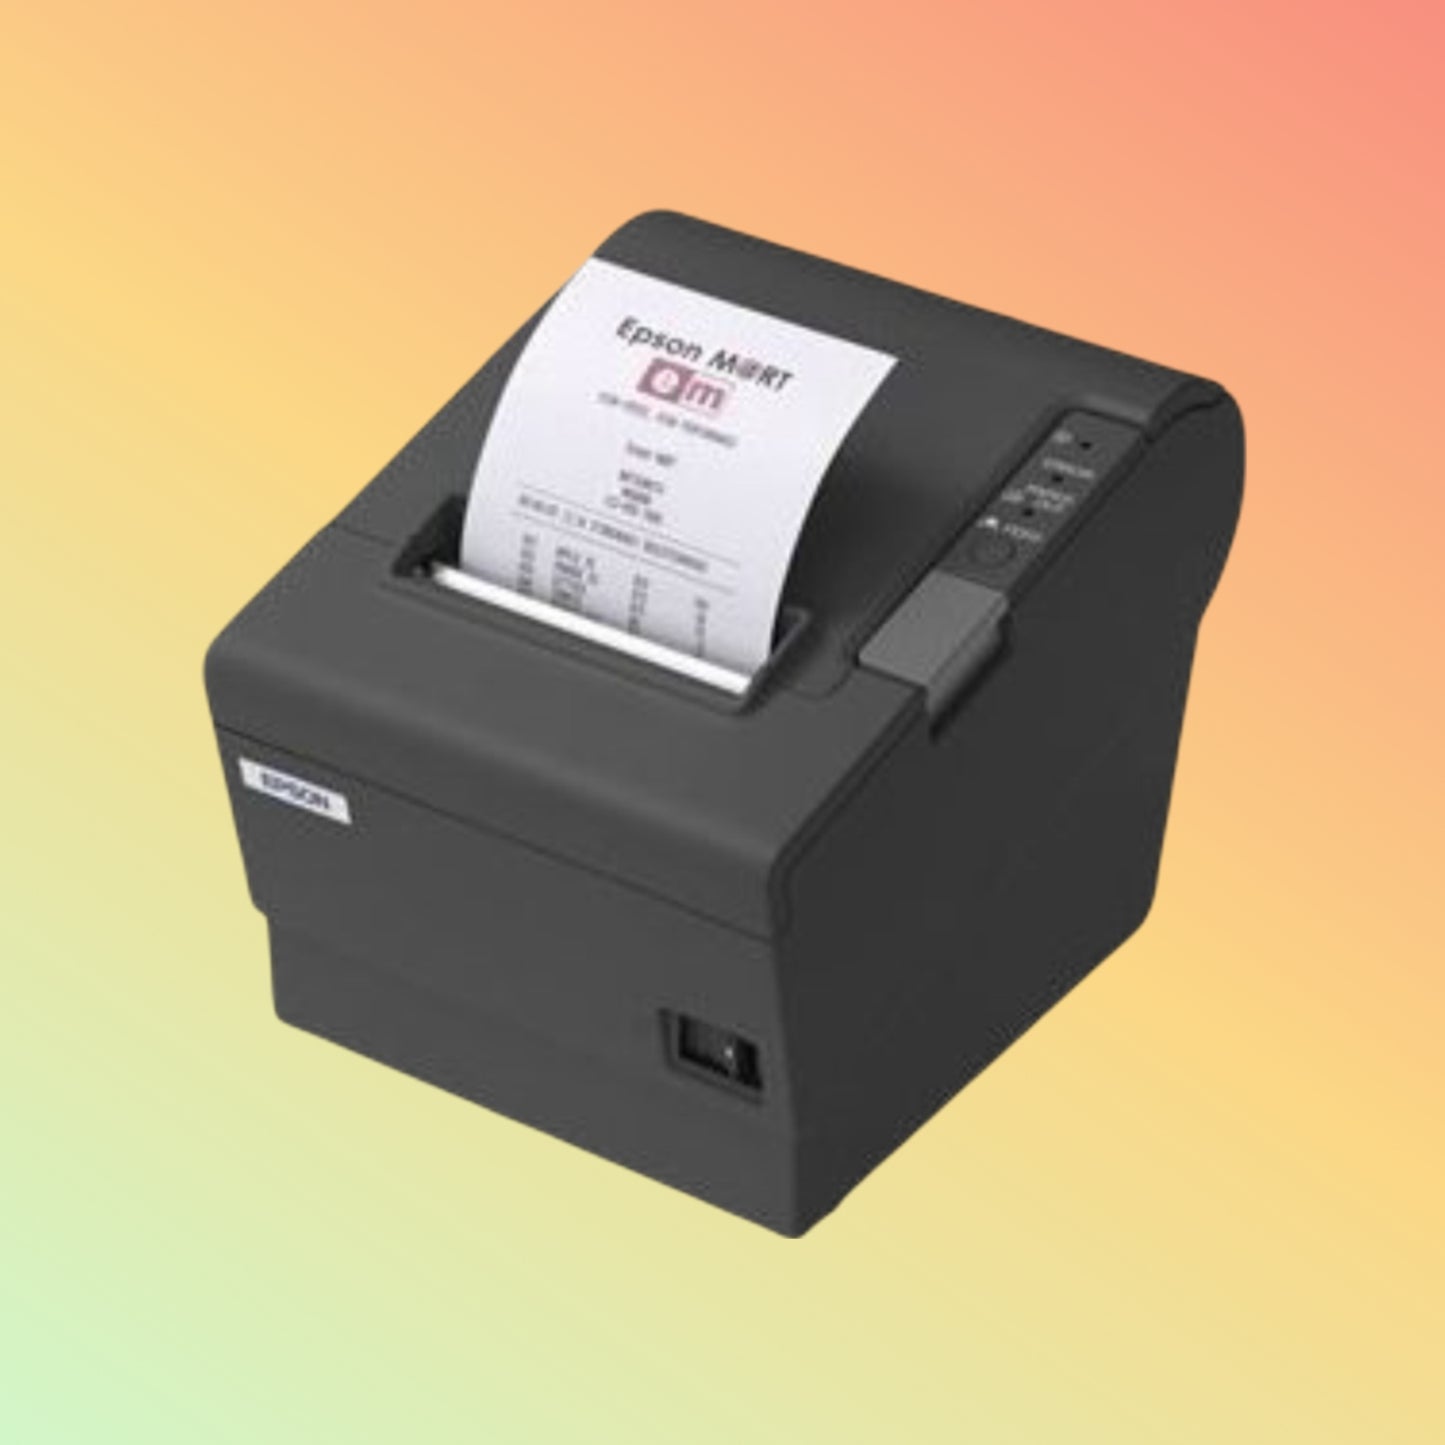 Epson TM-T88IV Thermal Receipt Printer